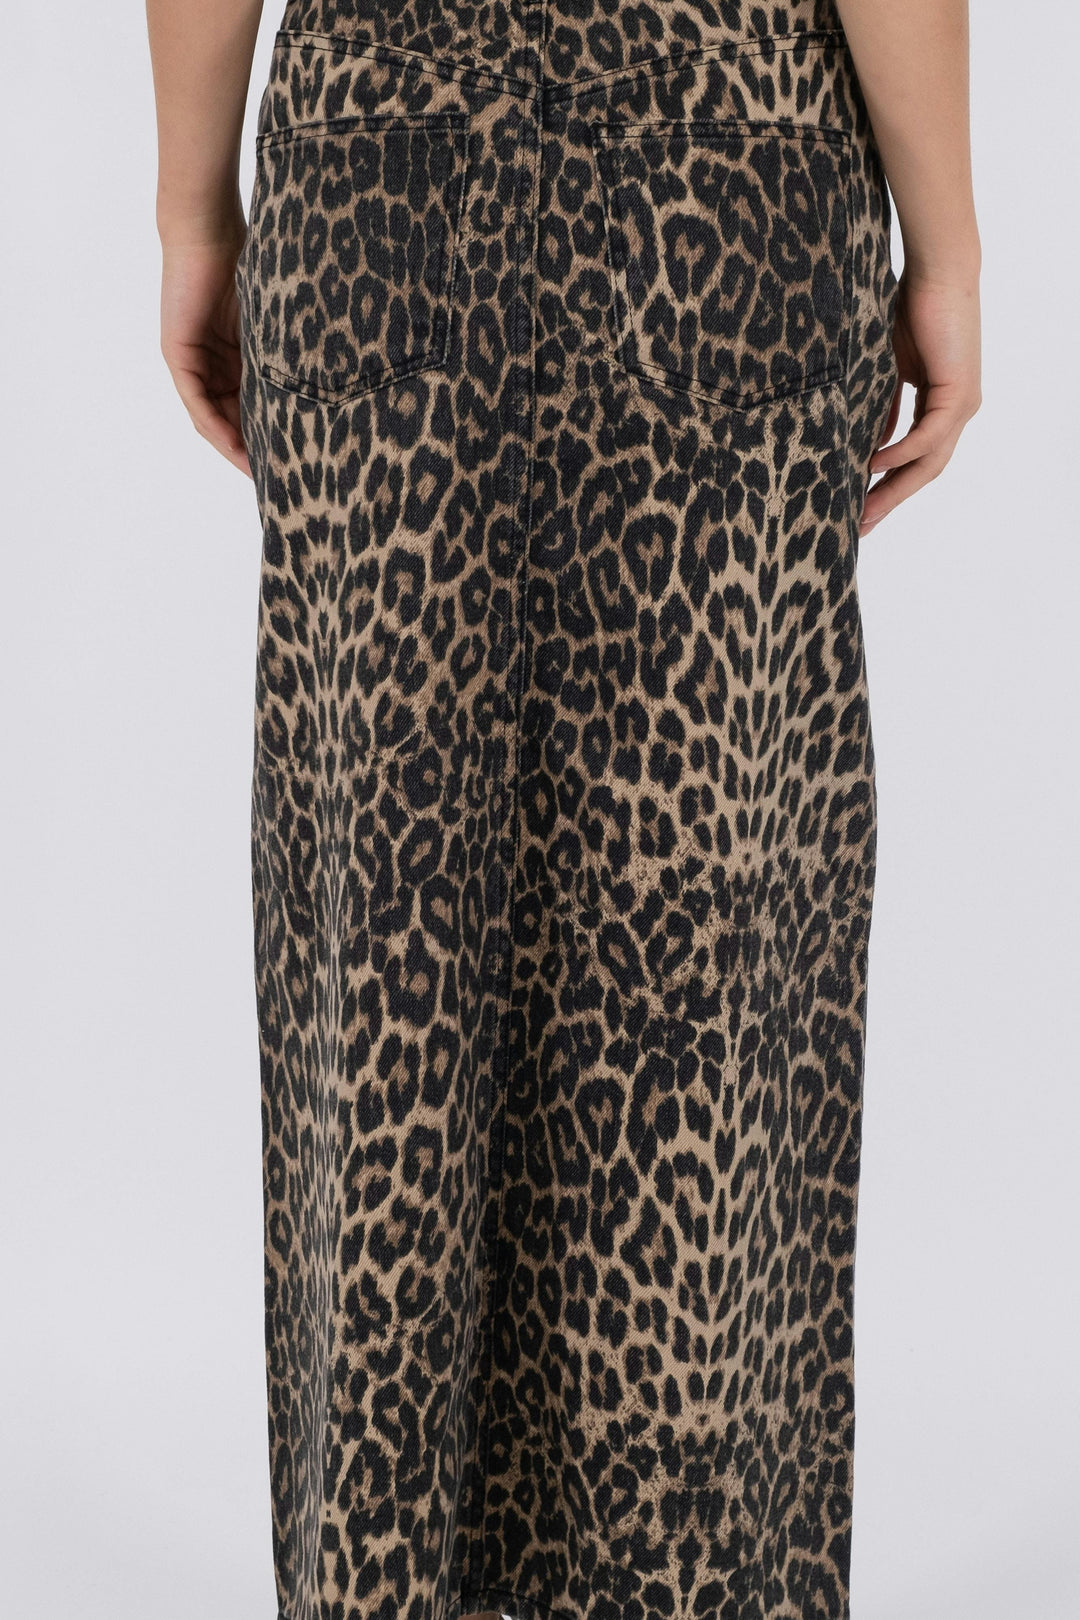 Neo Noir - Frankie Leopard Skirt - Leopard